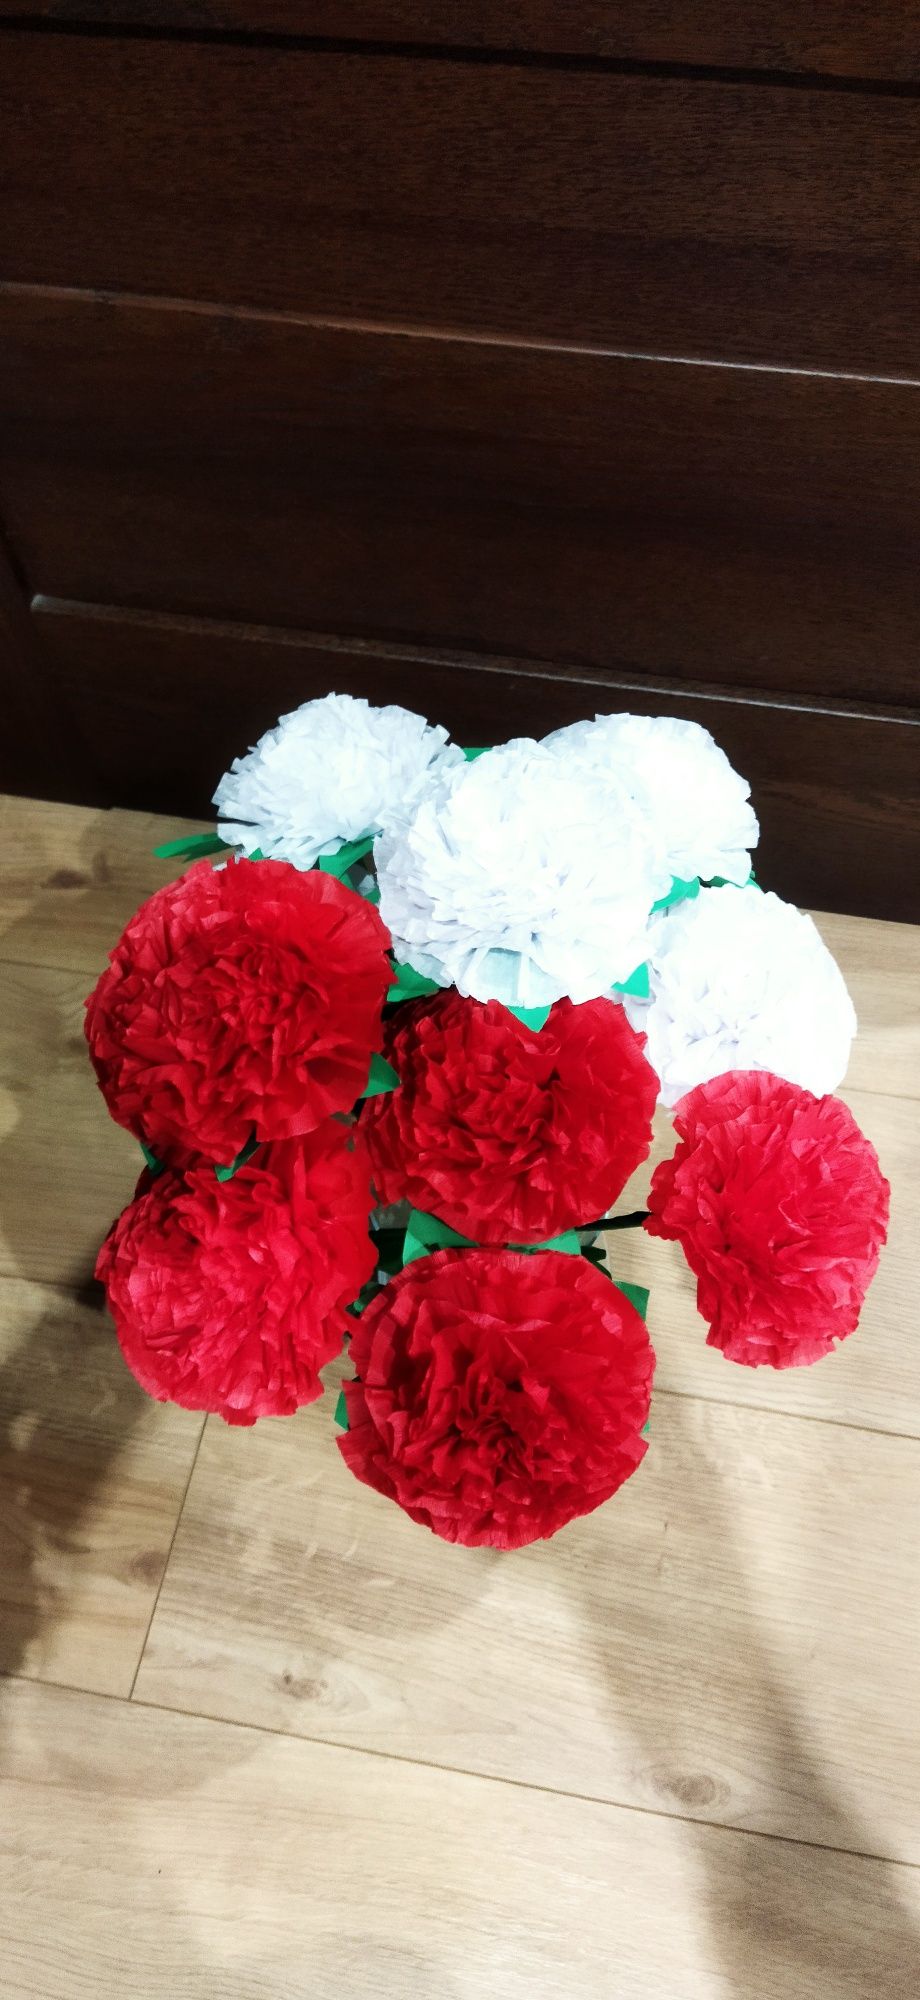 Kwiaty z bibuły białe i czerwone 3 maja 11 listopada Święto Niepodległ